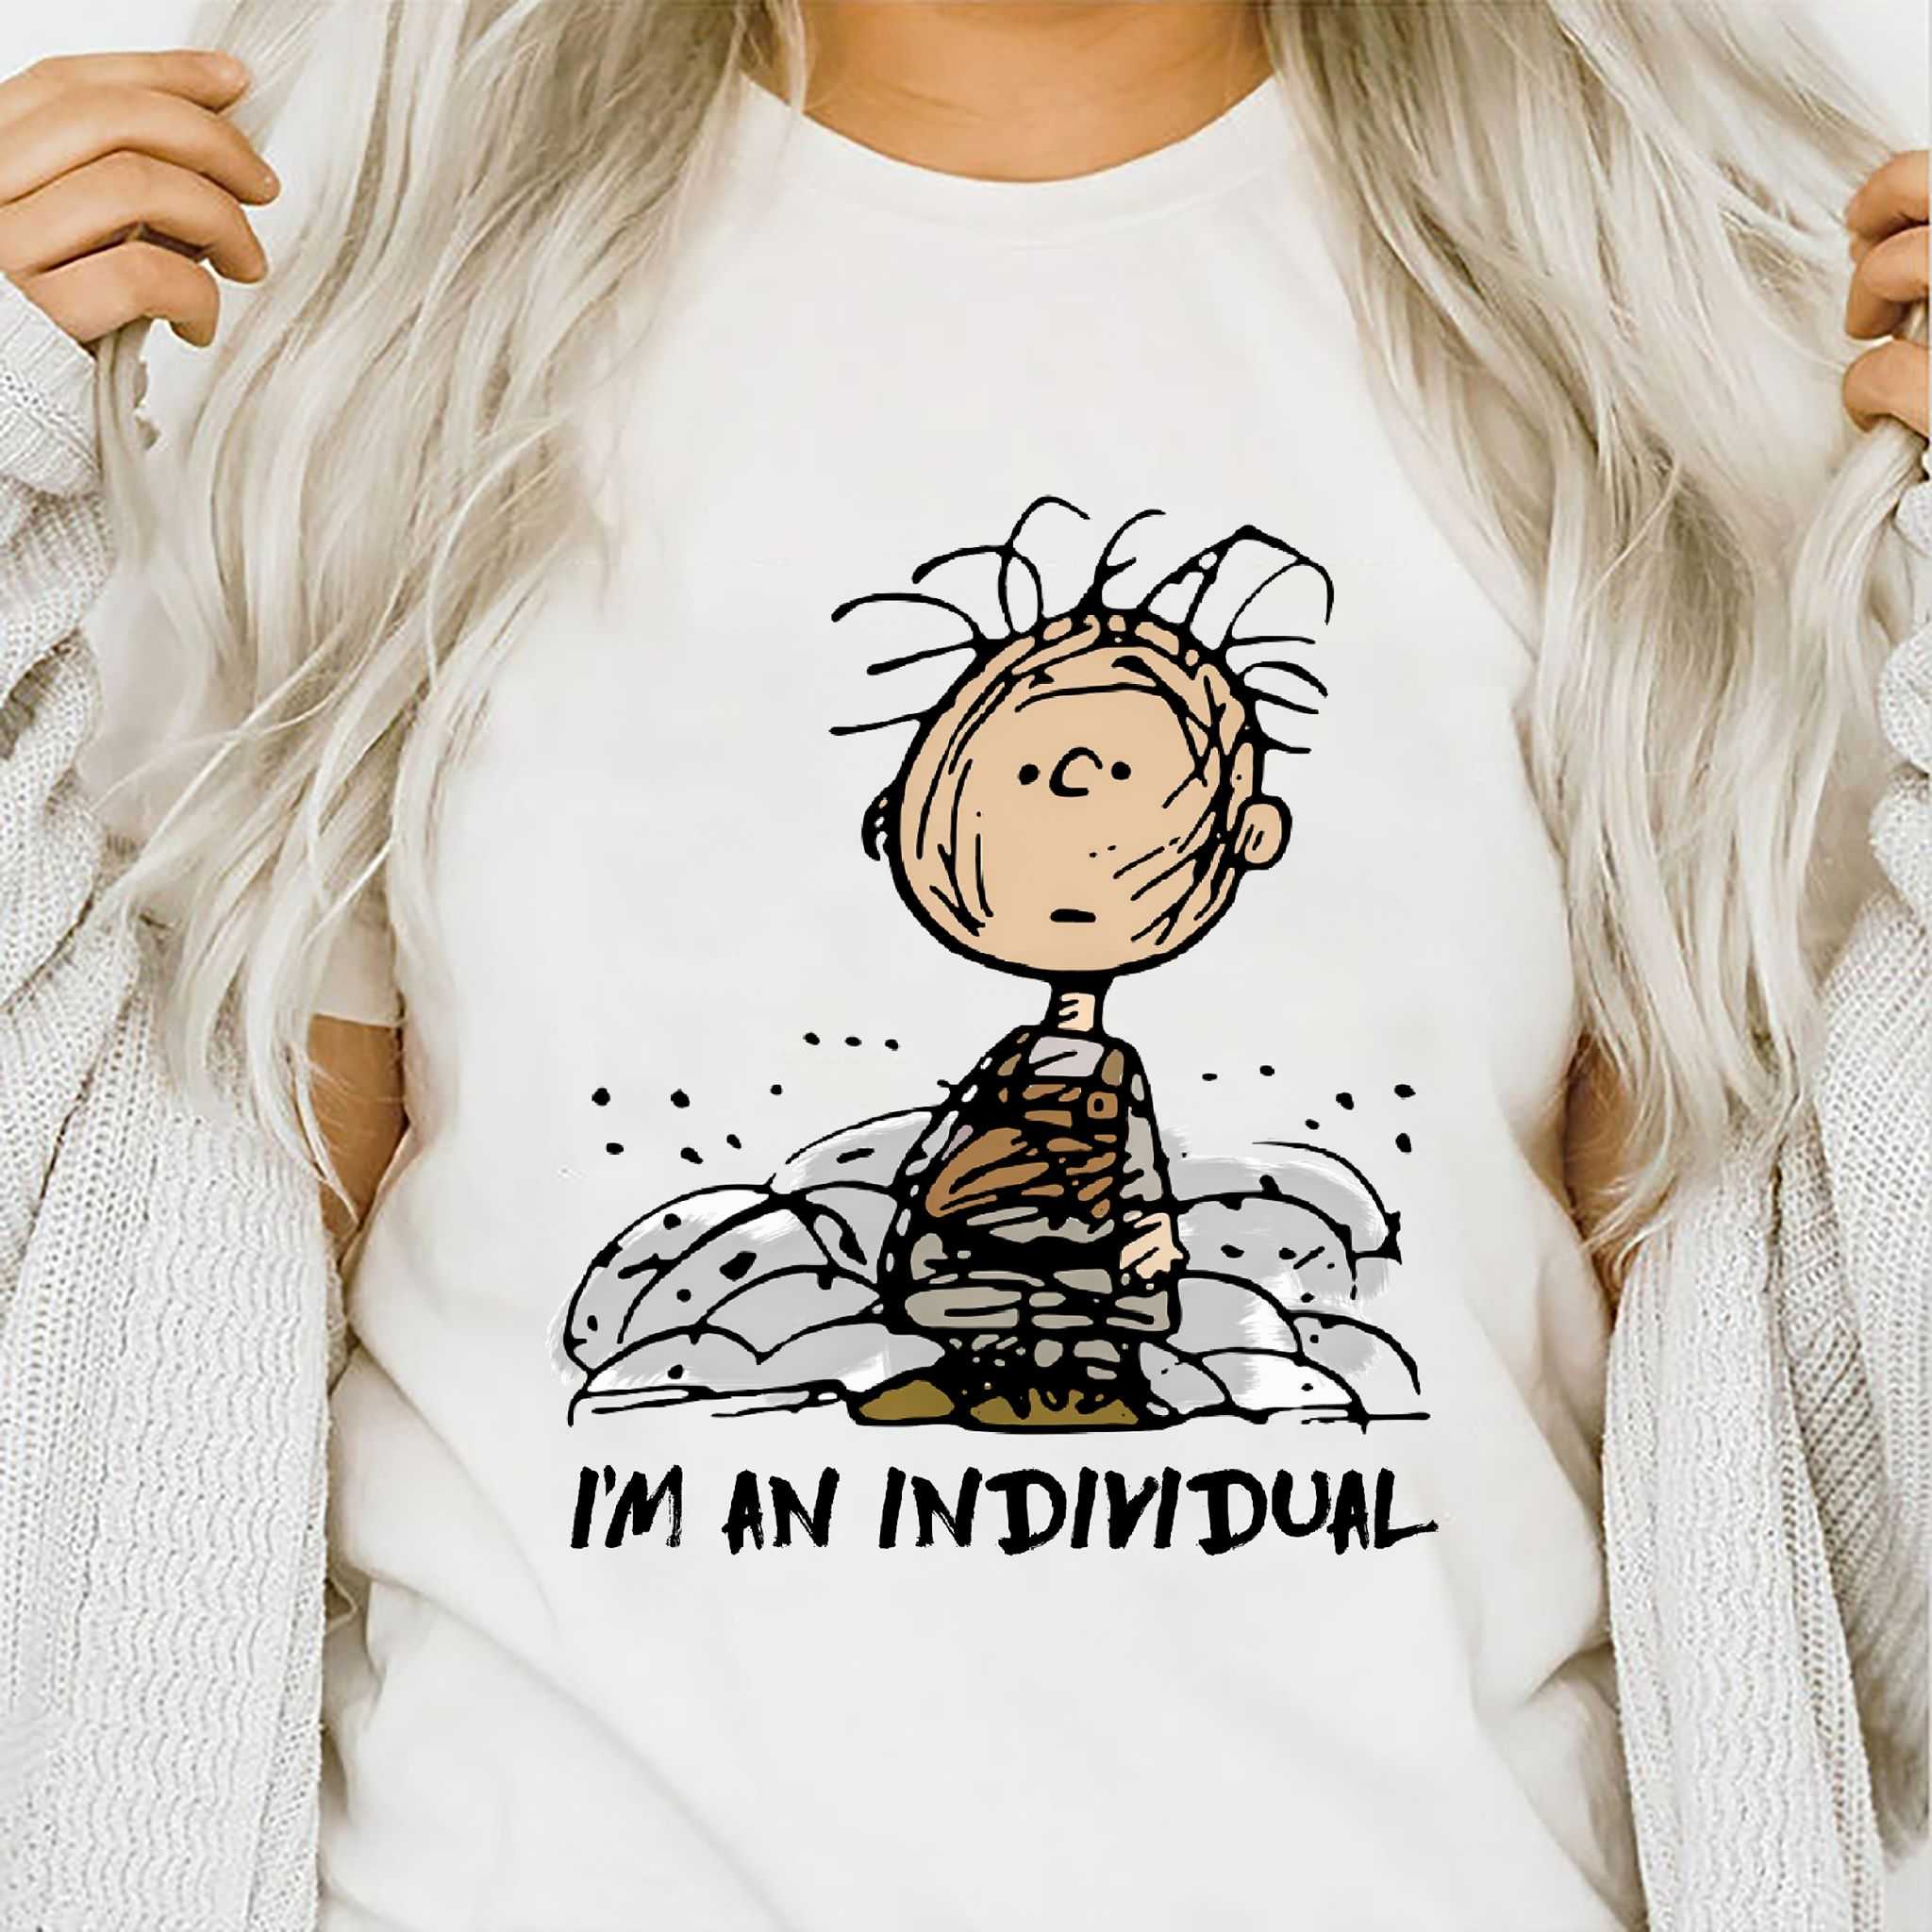 I'm an individual - Get dirty individual, Peanuts boy